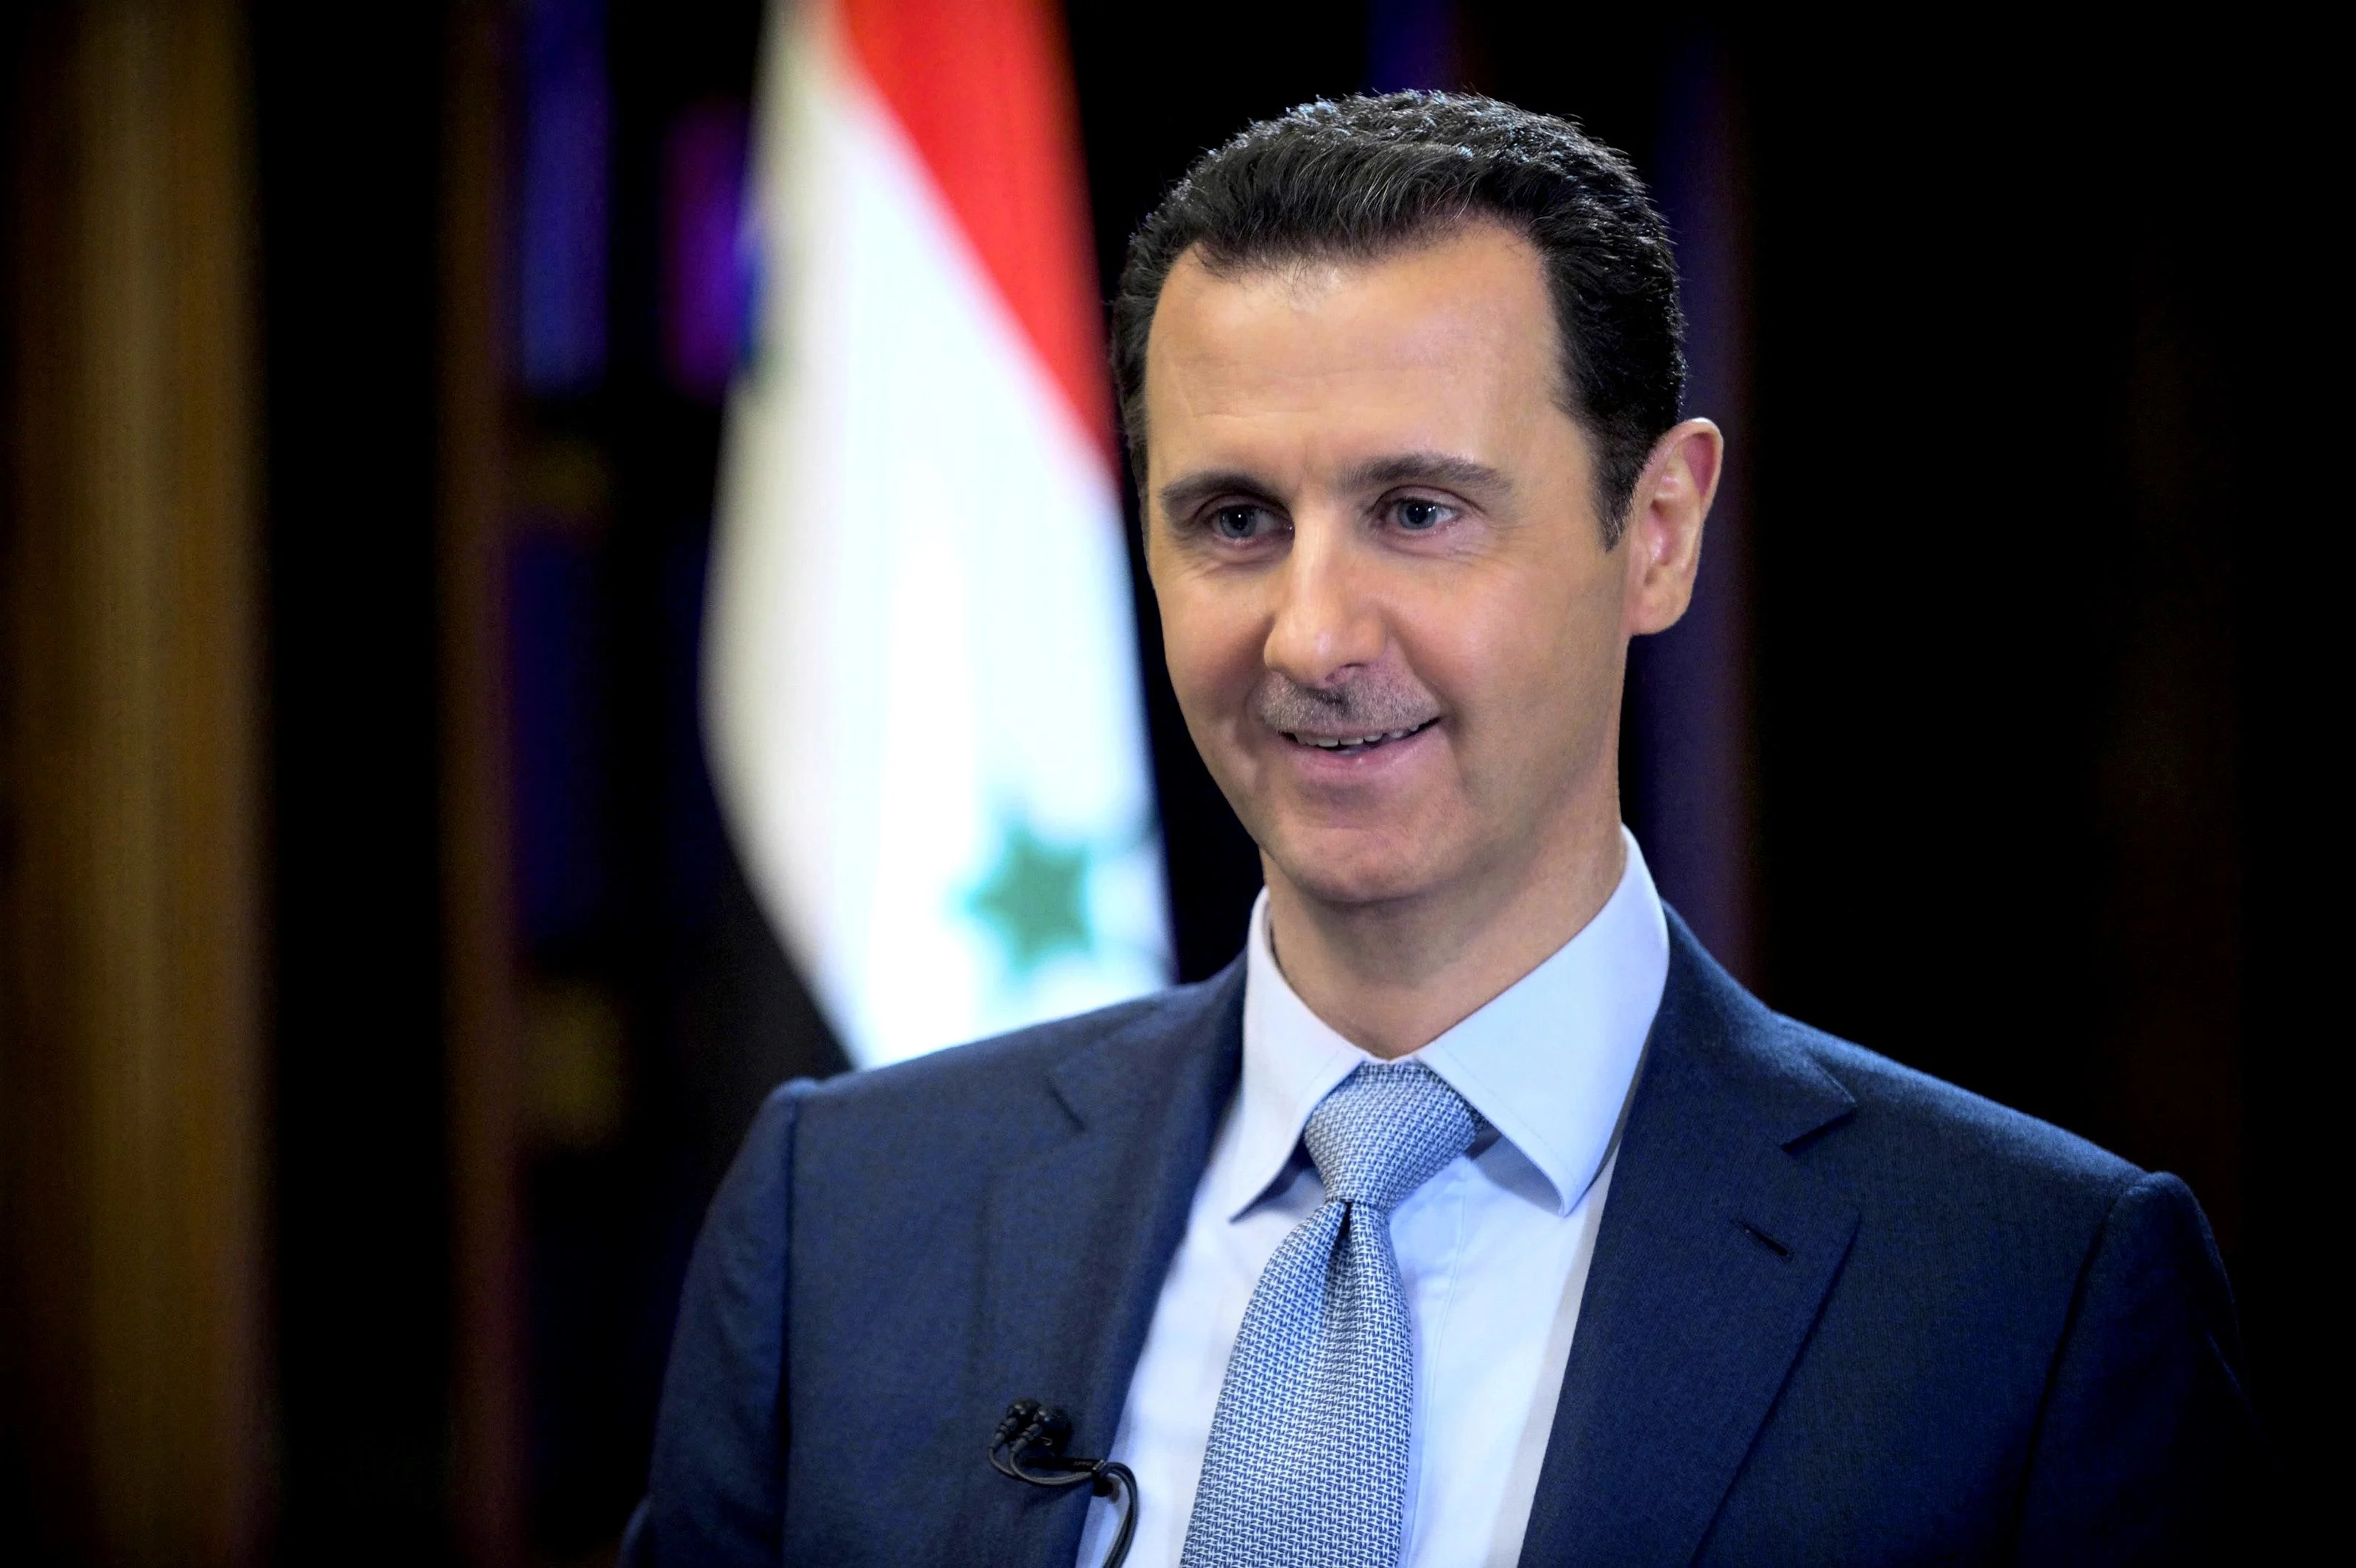 "שינוי בינלאומי בגישה ביחס למצב בסוריה יהיה חיובי". בשאר אל אסד